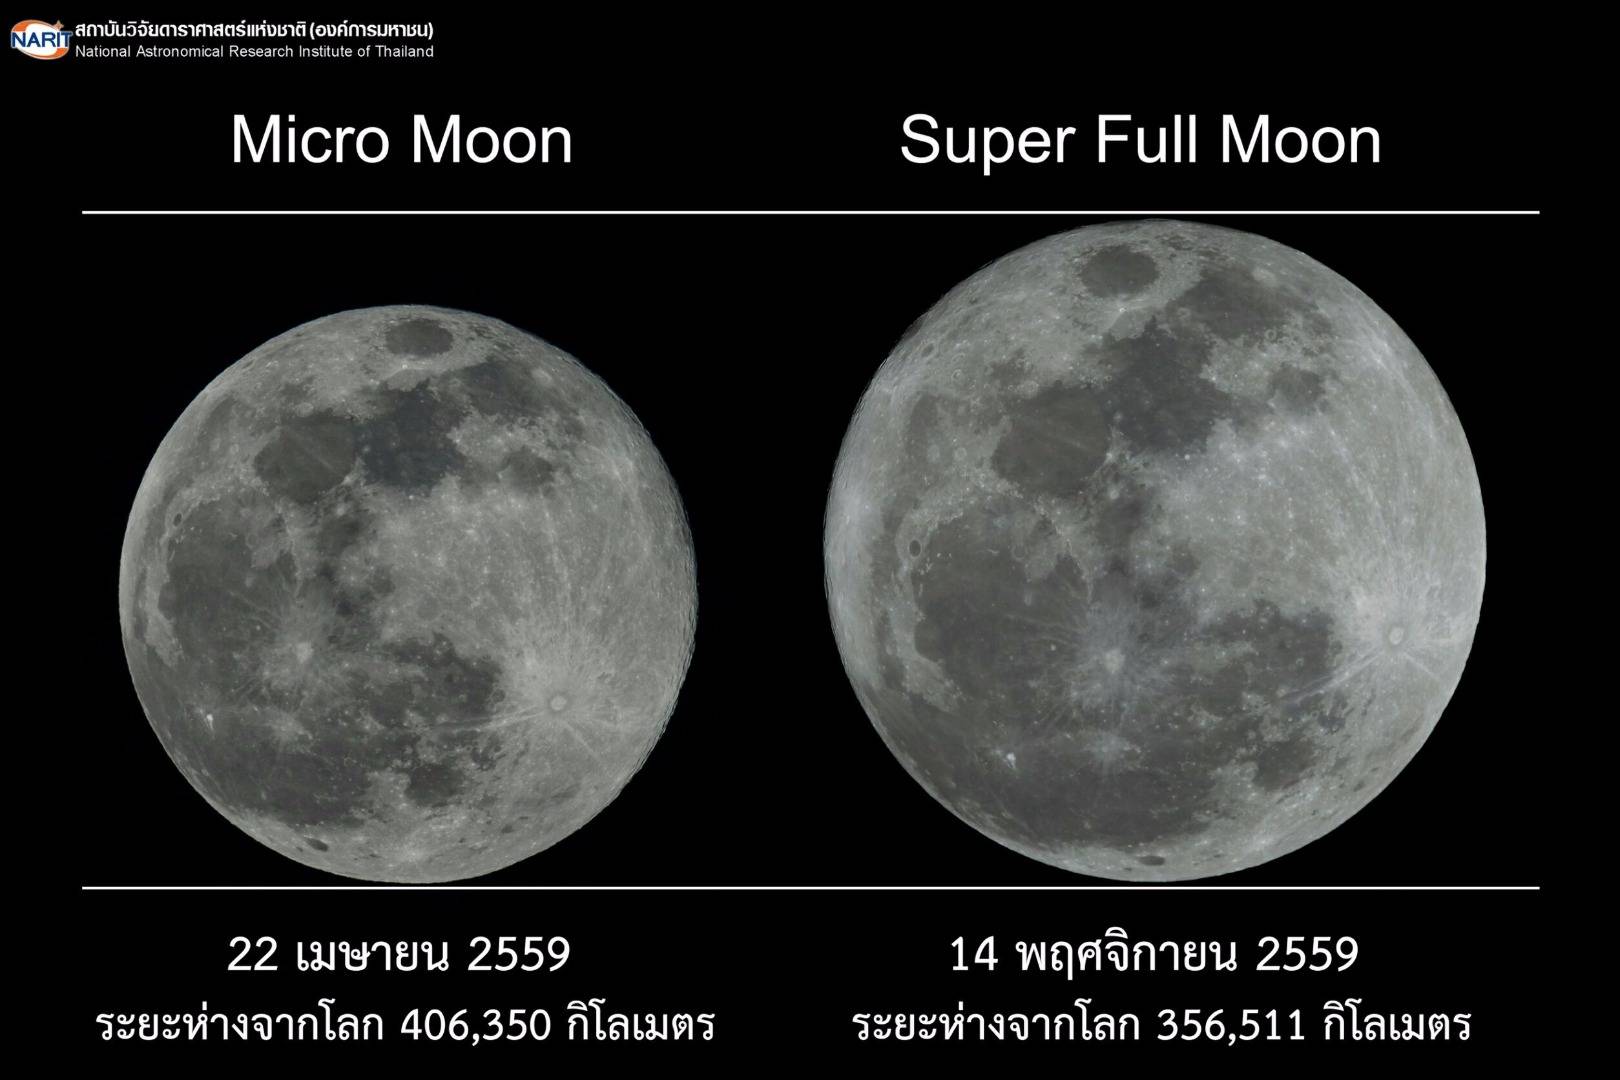 ภาพเปรียบเทียบขนาดปรากฏของดวงจันทร์เต็มดวงใกล้-ไกลโลกที่สุดในรอบปี 2559